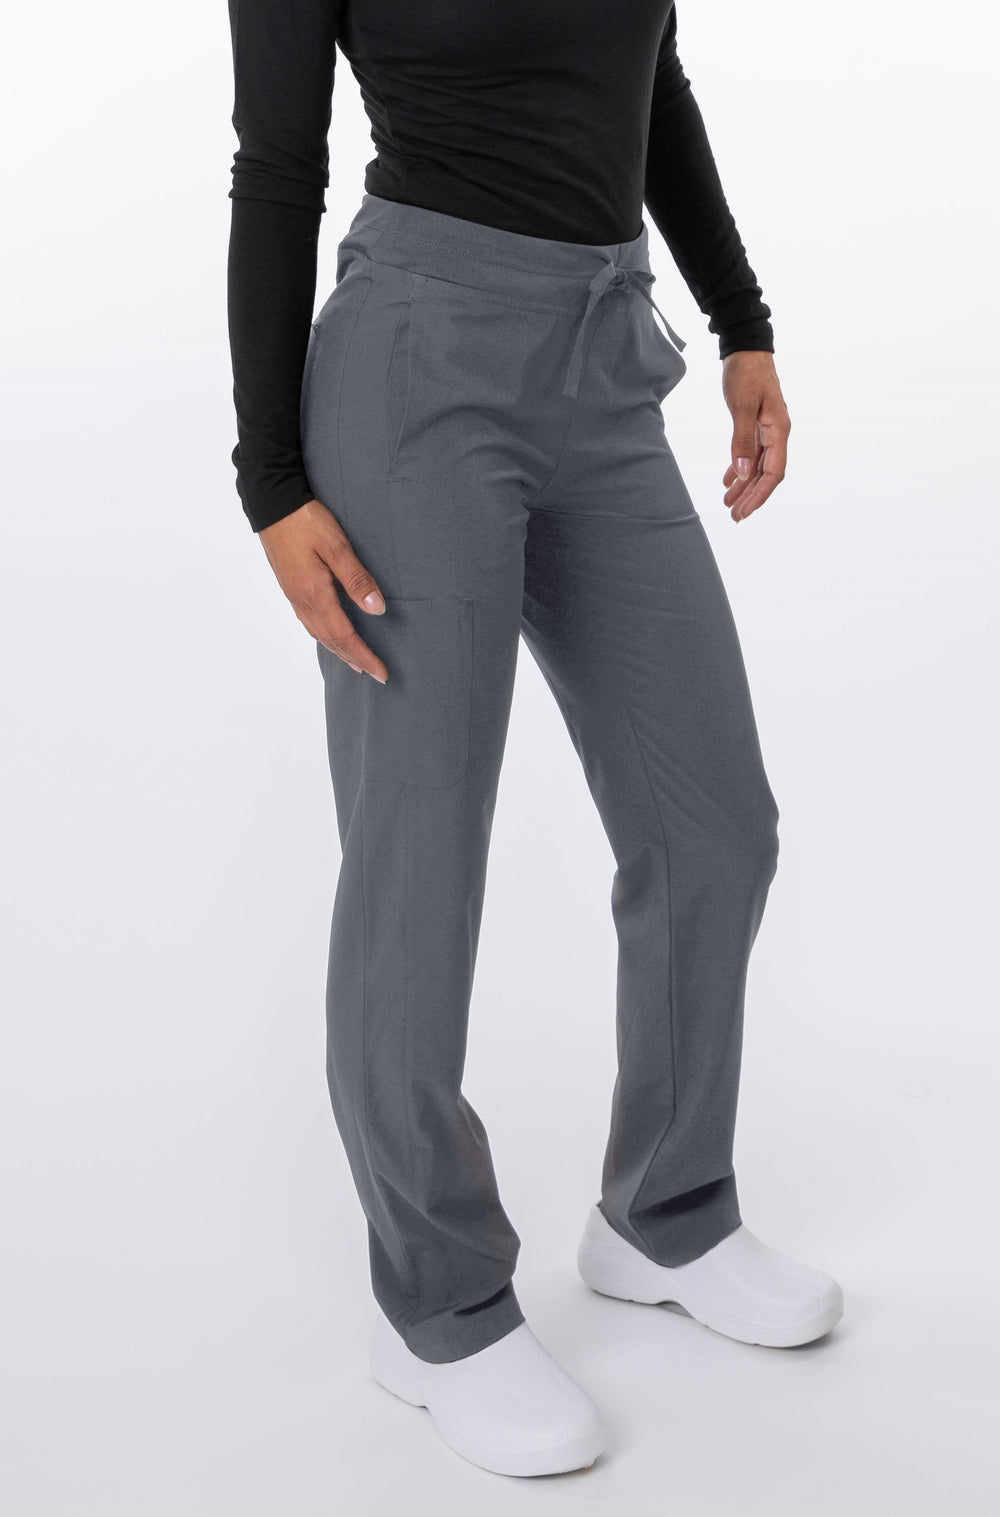 Zinnia Modern Yoga-Style ProfessionalcScrub Pants - Style 18-1044